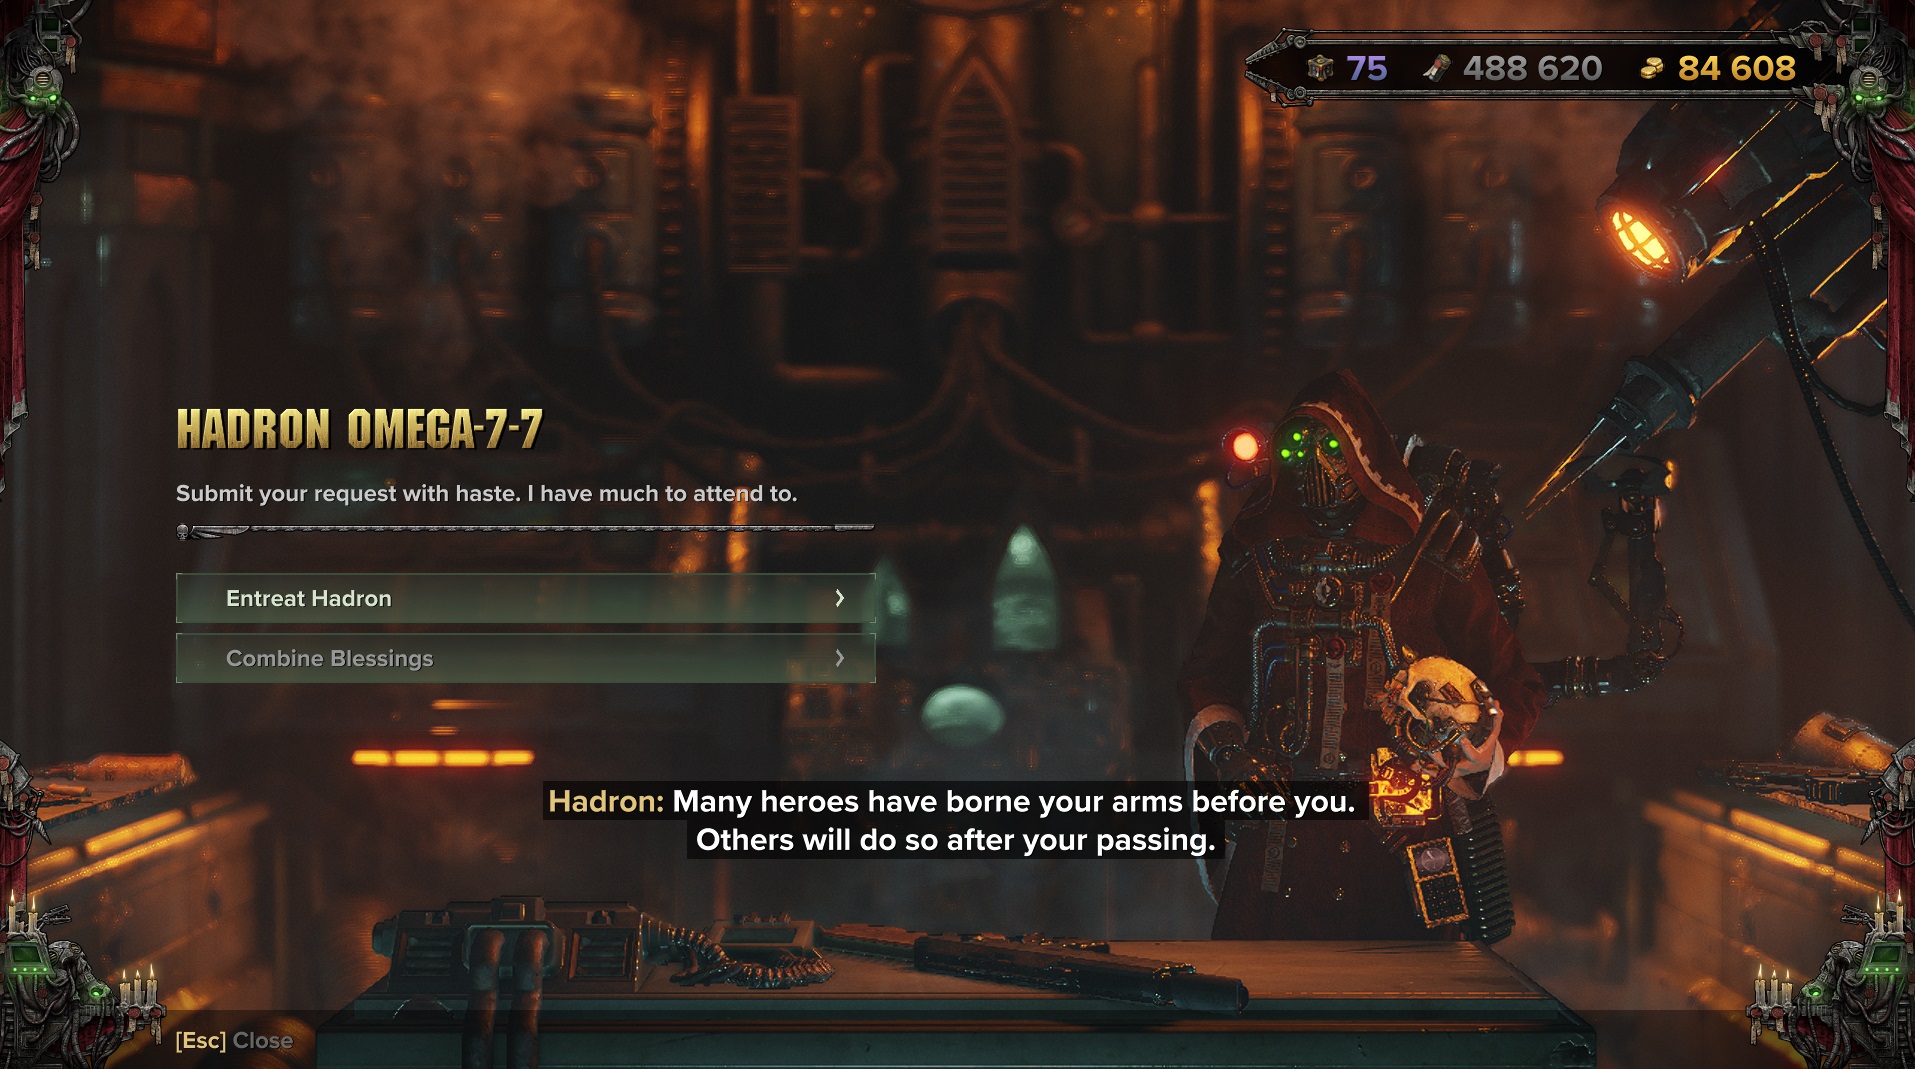 Warhammer 40k: Darktide details its new crafting system